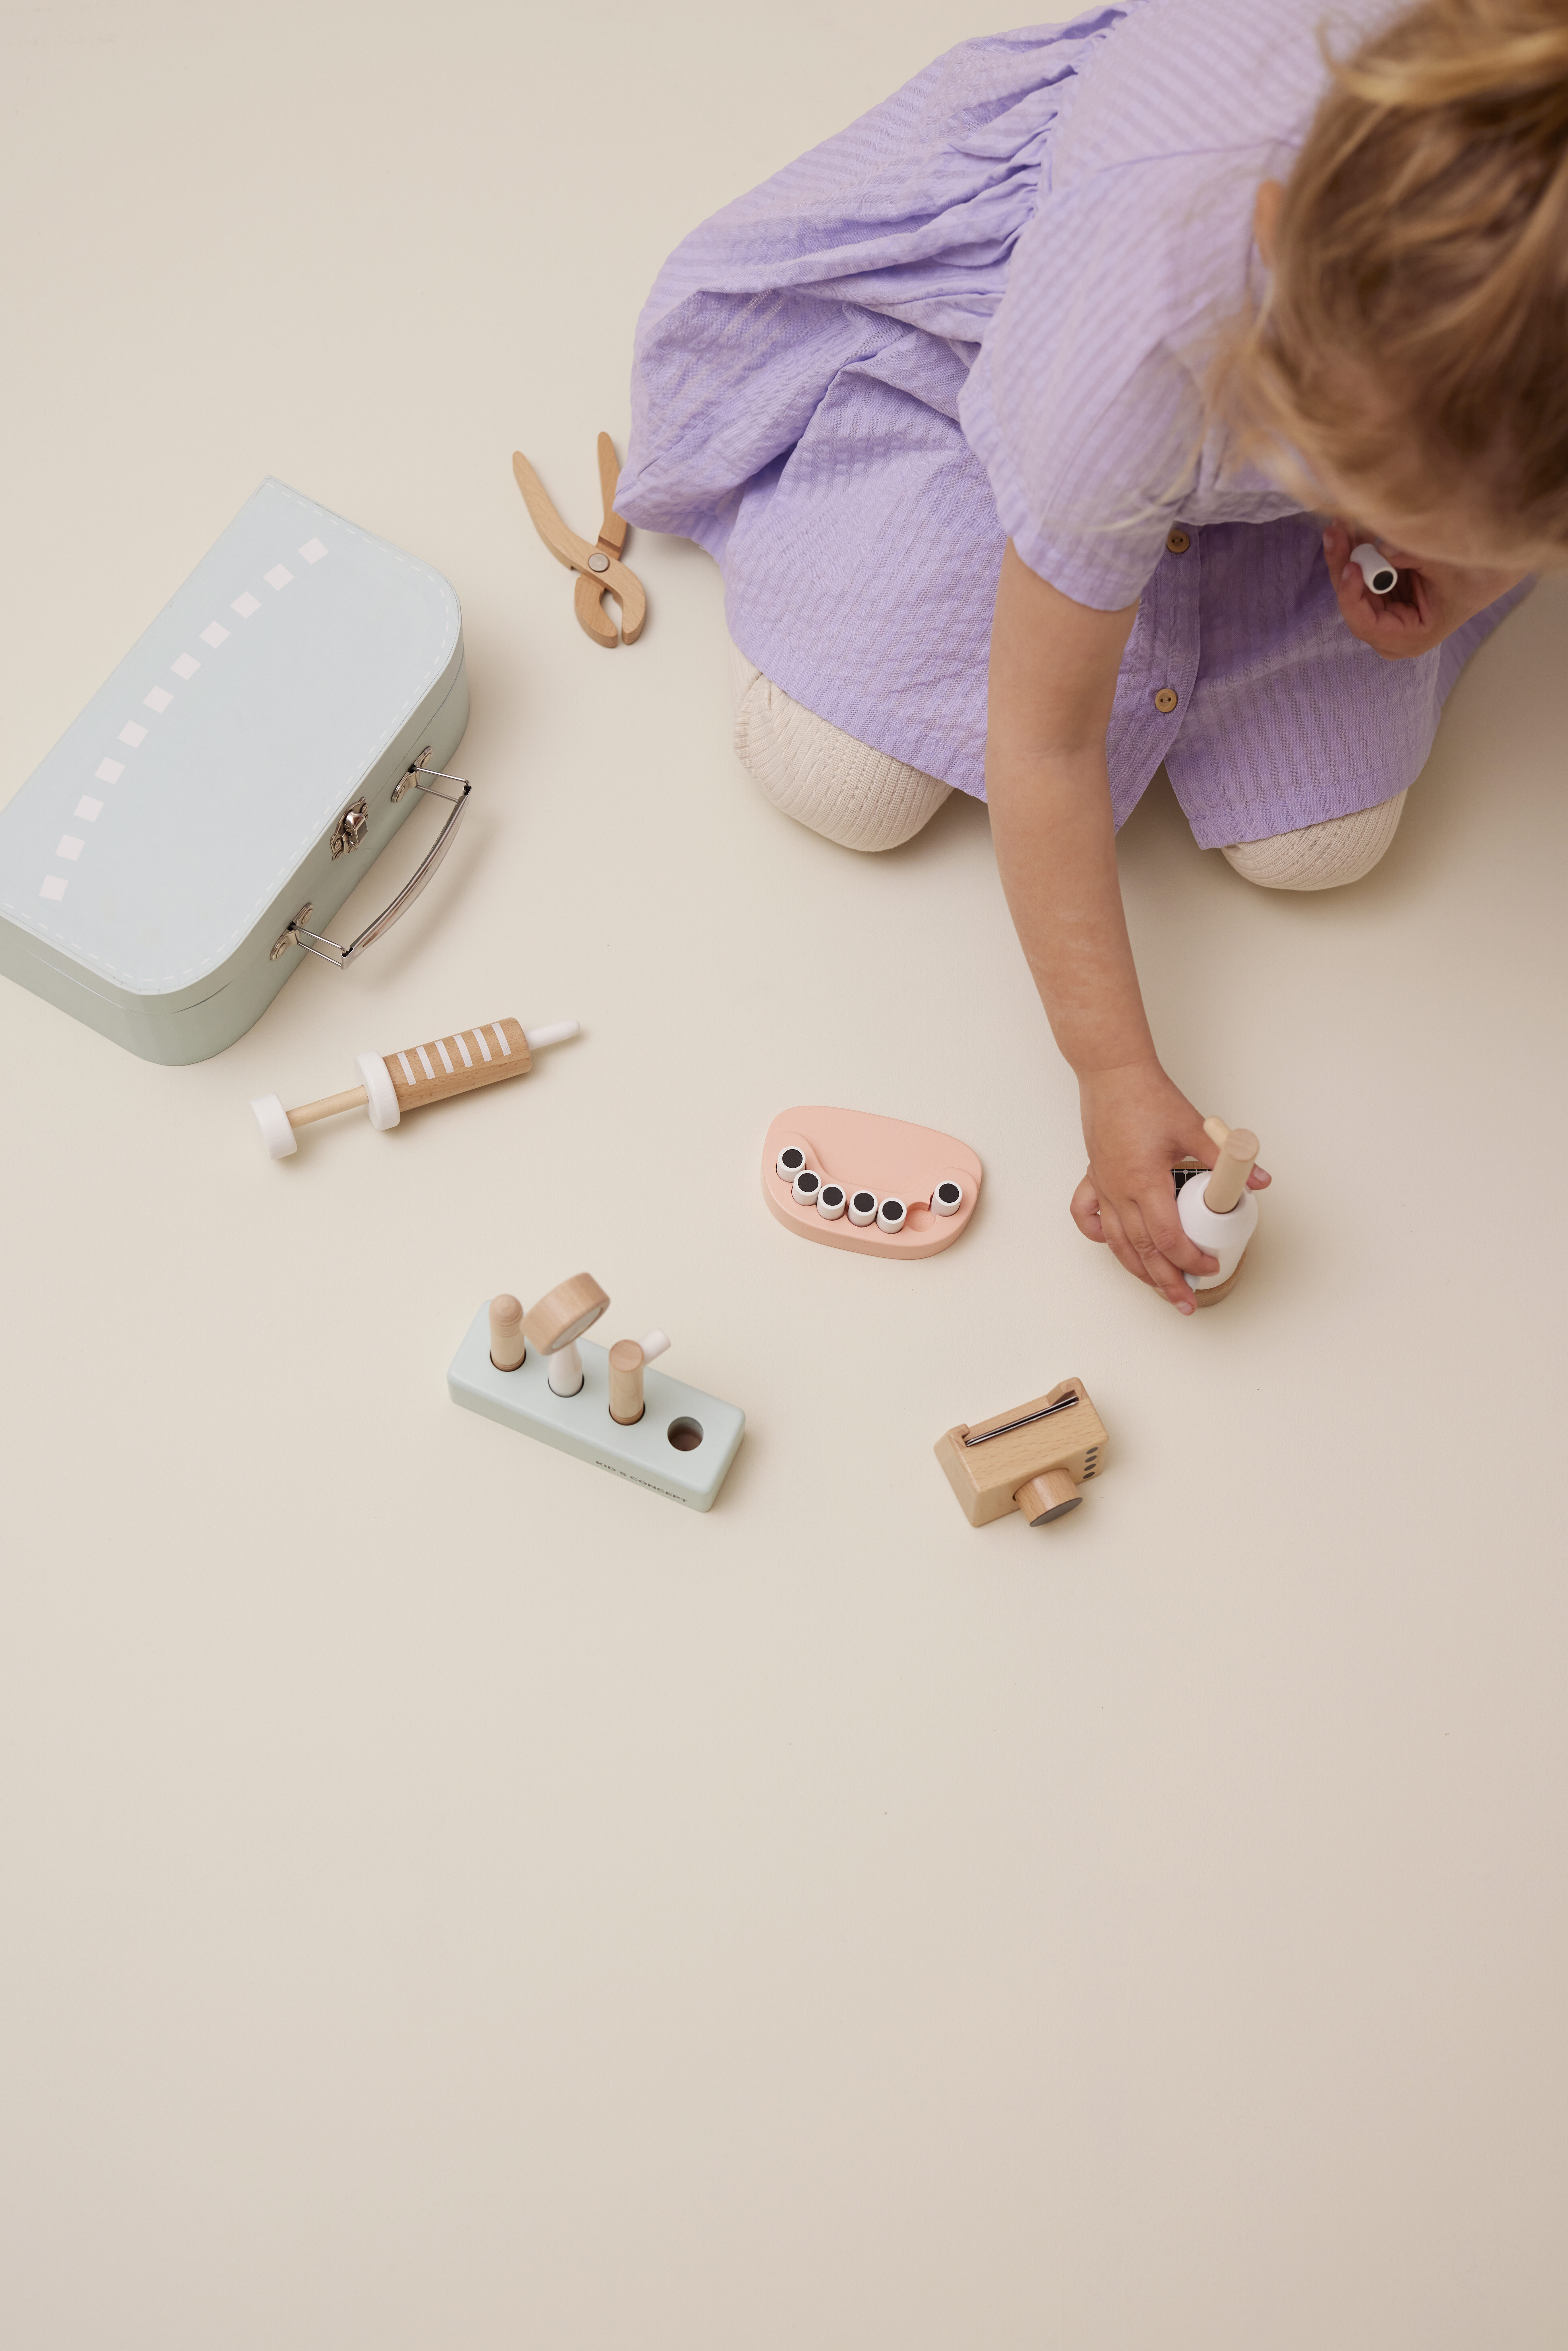 Kit de dentiste pour enfant - Boutique inspirée de la pédagogie